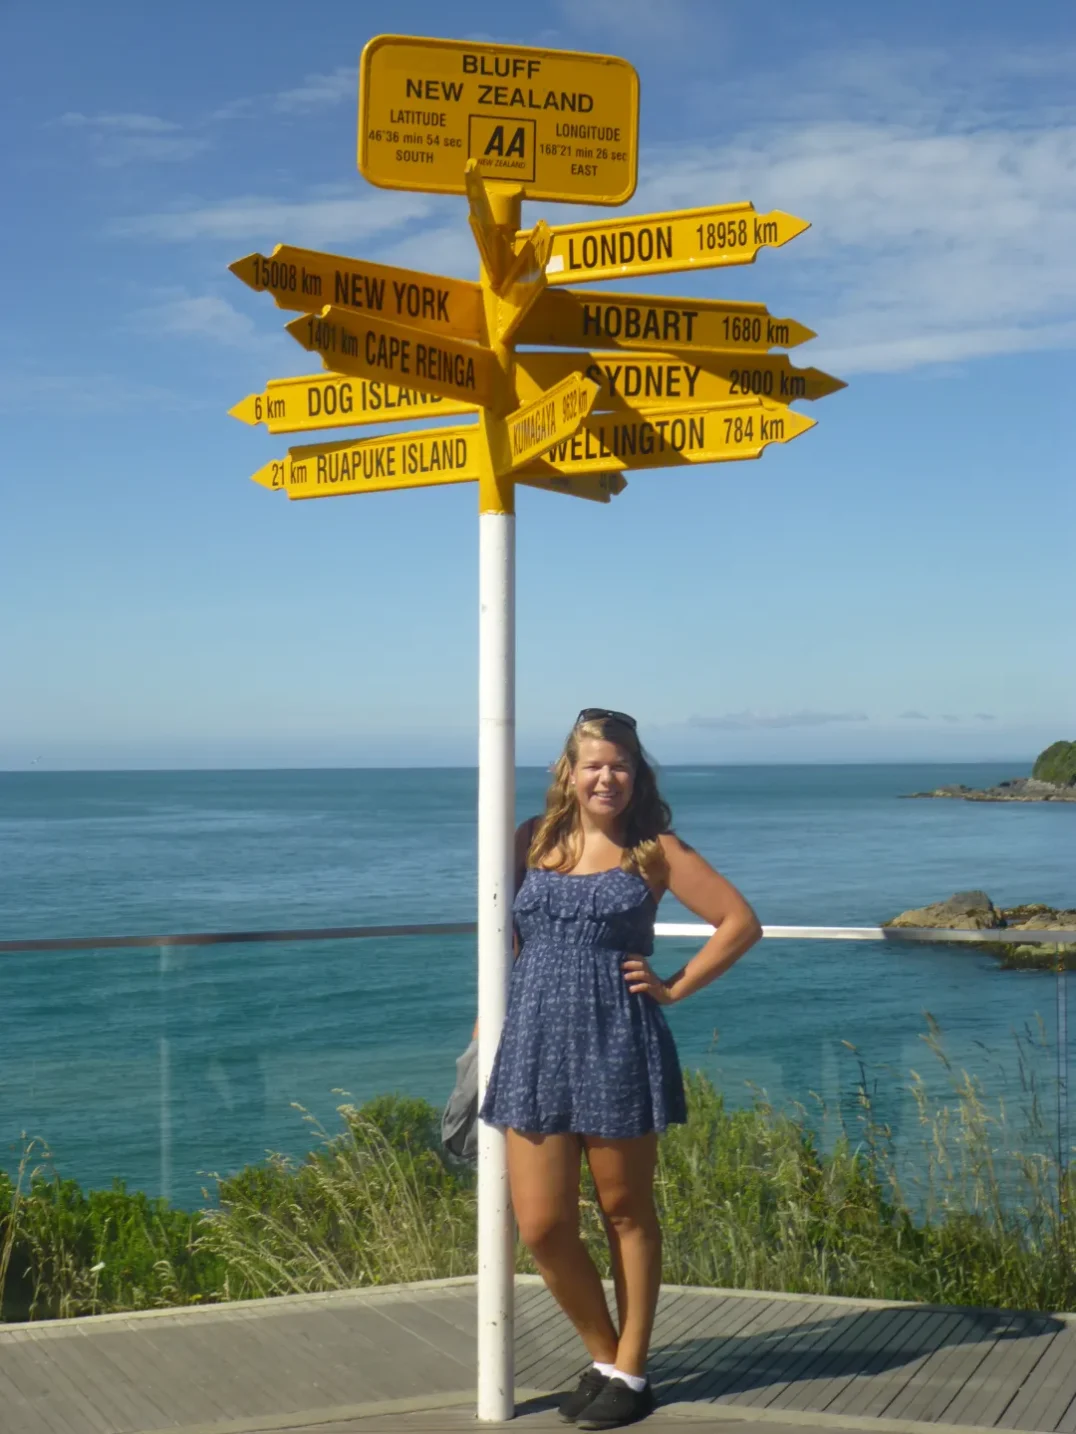 Annkathrin steht im Kleid am Stirling Point in Bluff in Neuseeland.